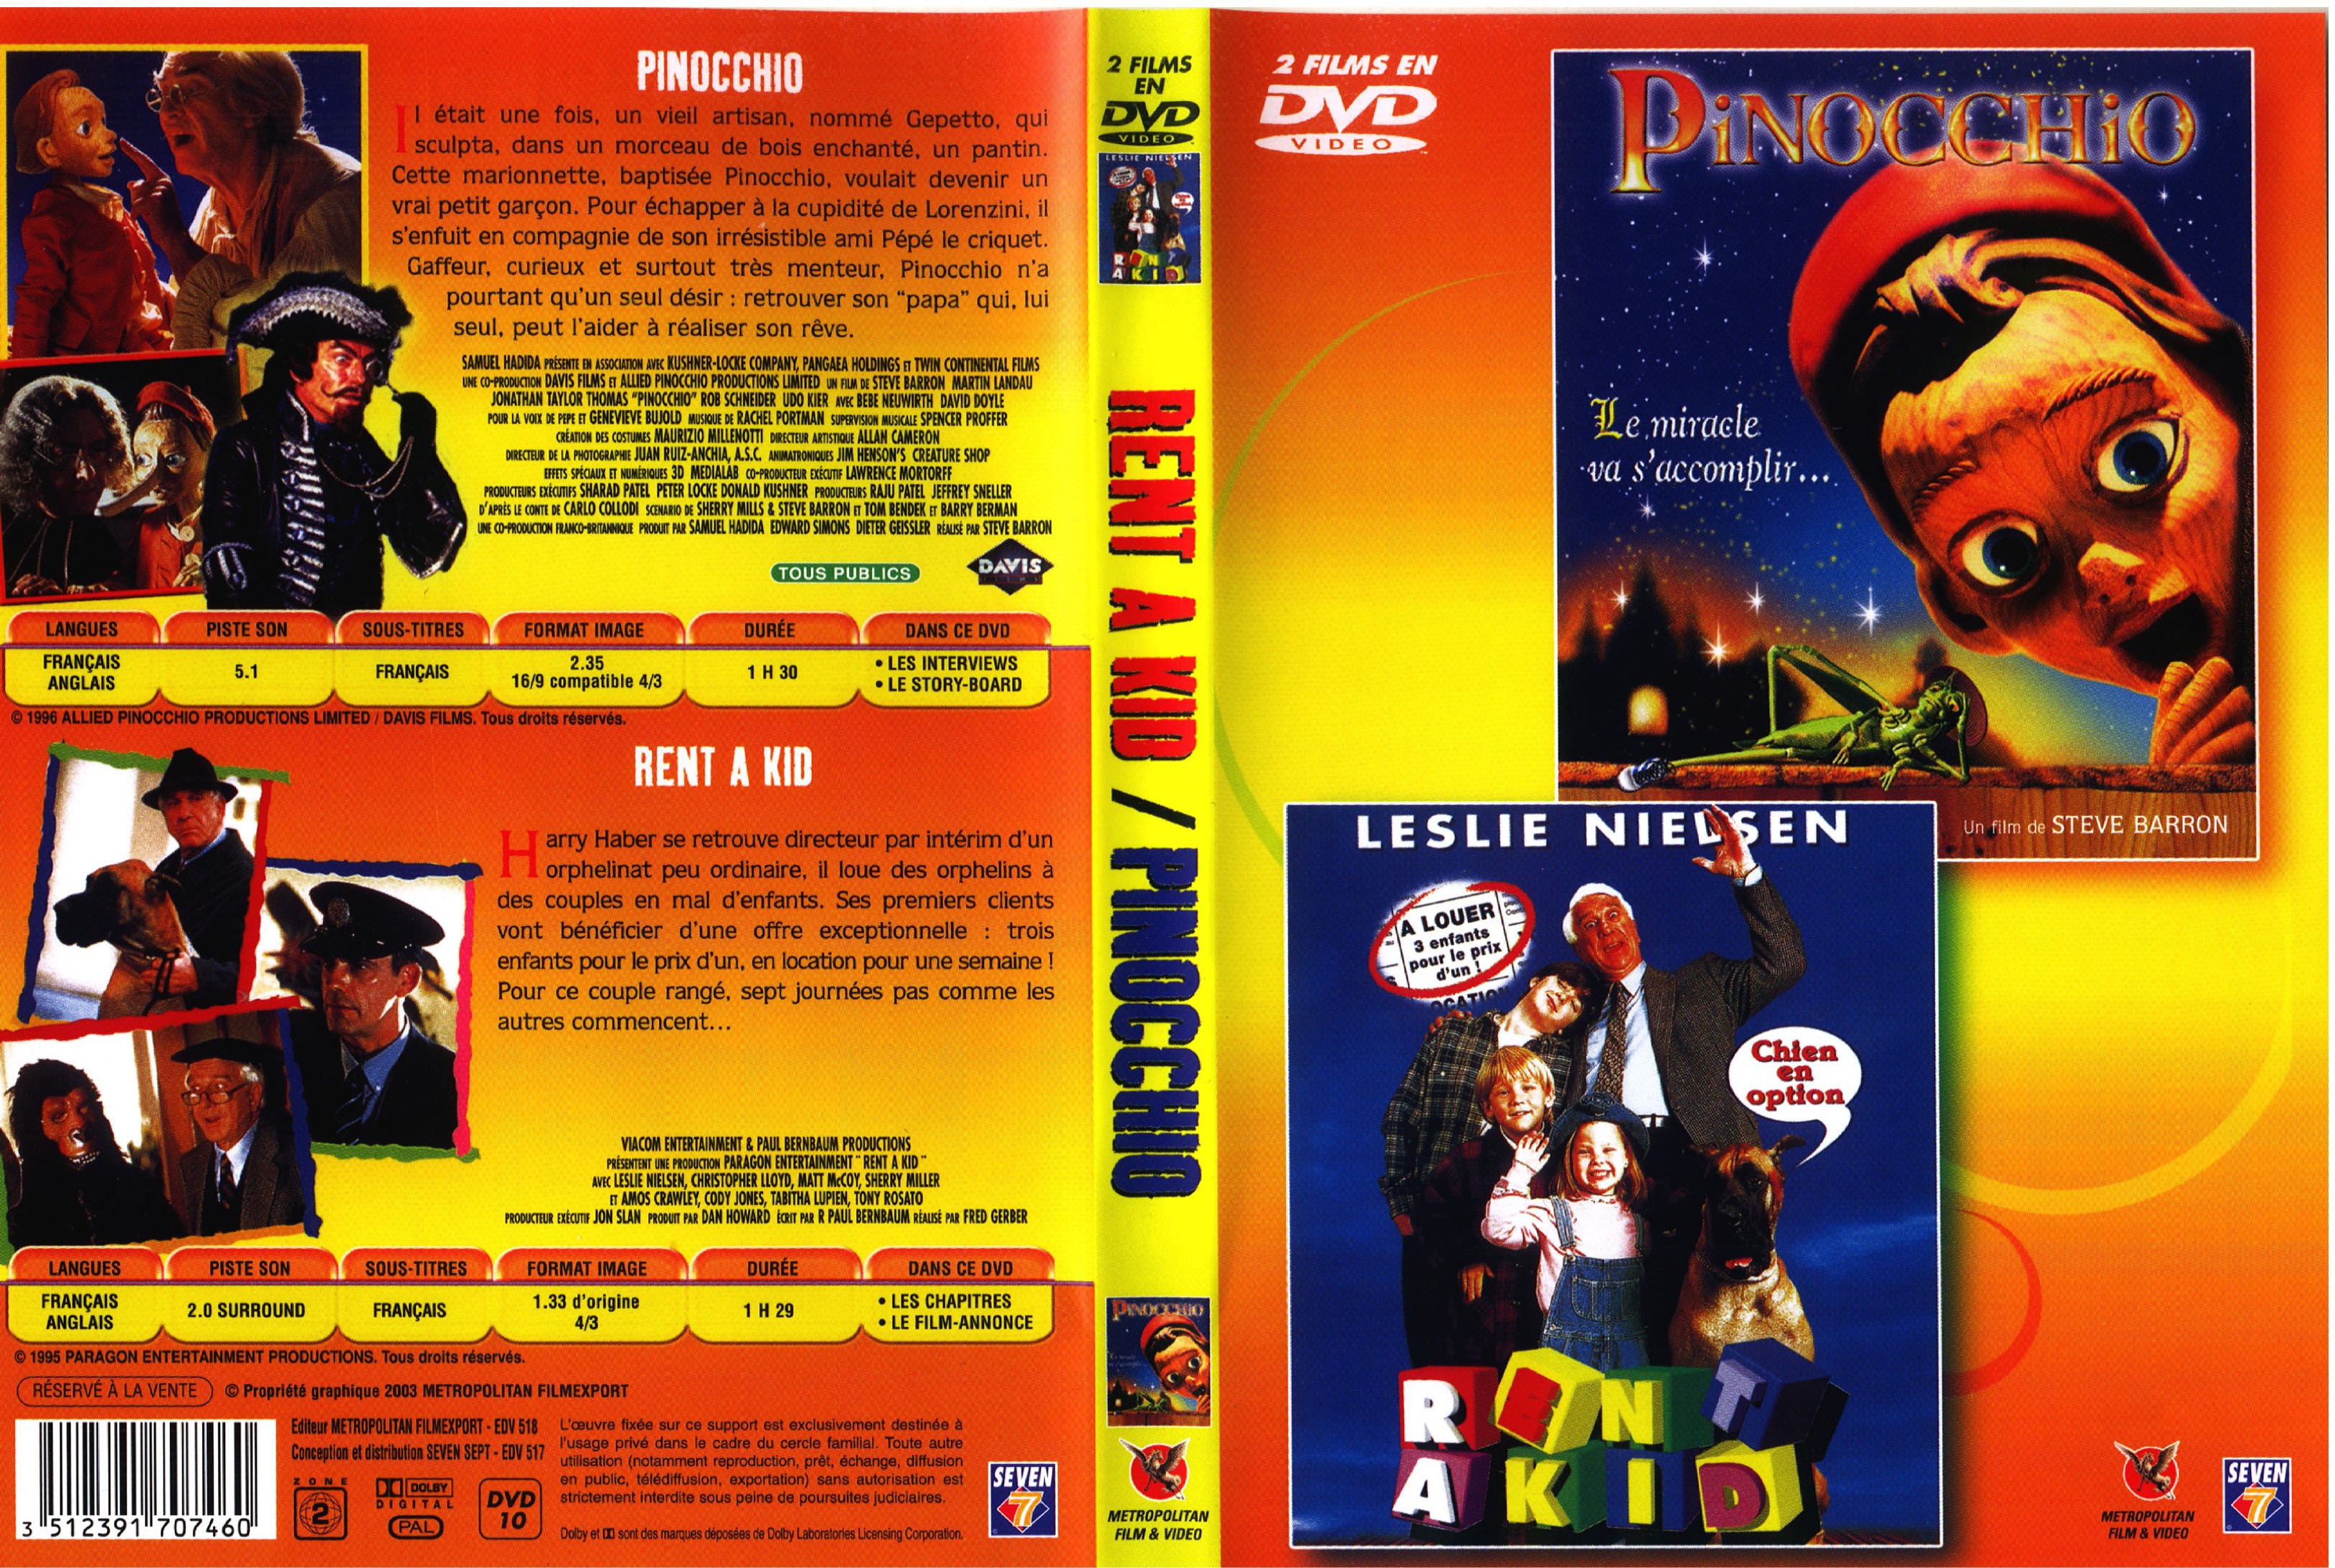 Jaquette DVD Rent a kid et Pinocchio